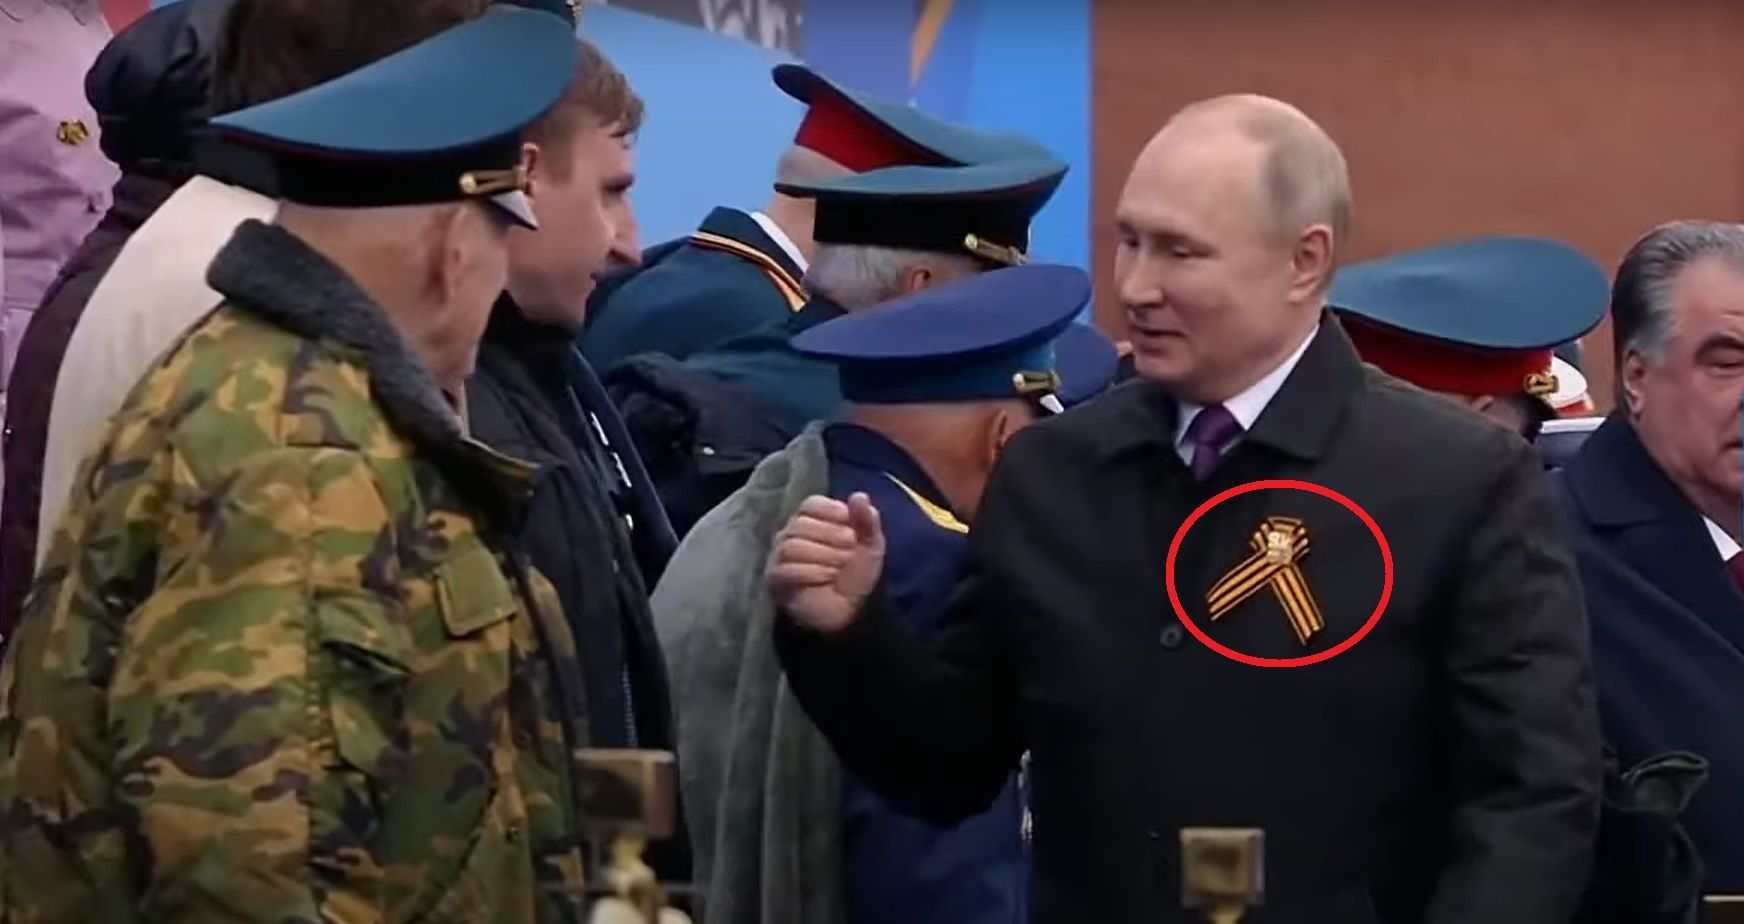 Putin wstęga św. Jerzego czerwony